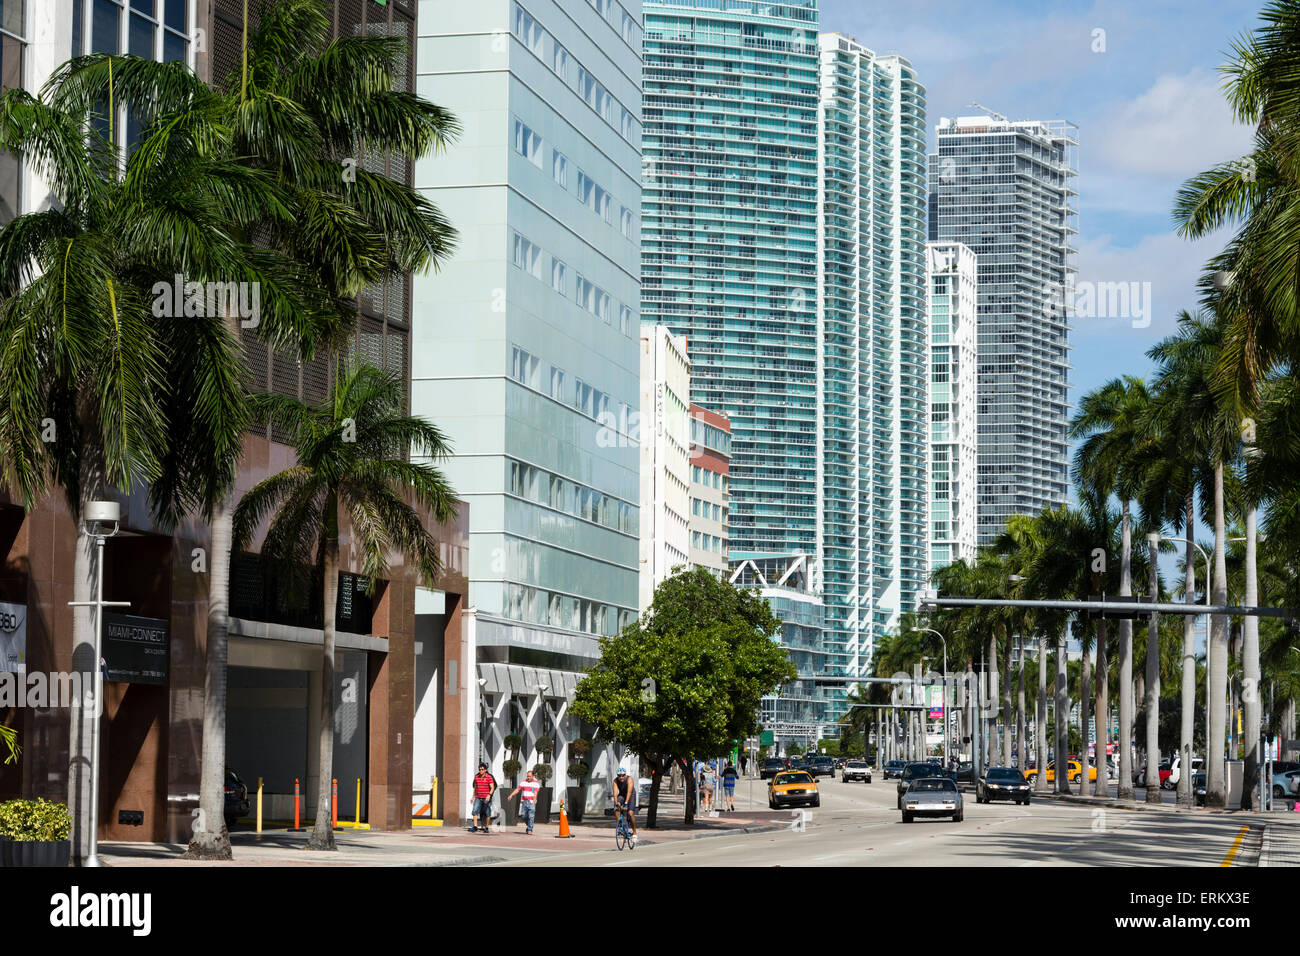 Les bâtiments modernes le long de Biscayne Boulevard, le centre-ville de Miami, Miami, Floride, États-Unis d'Amérique, Amérique du Nord Banque D'Images